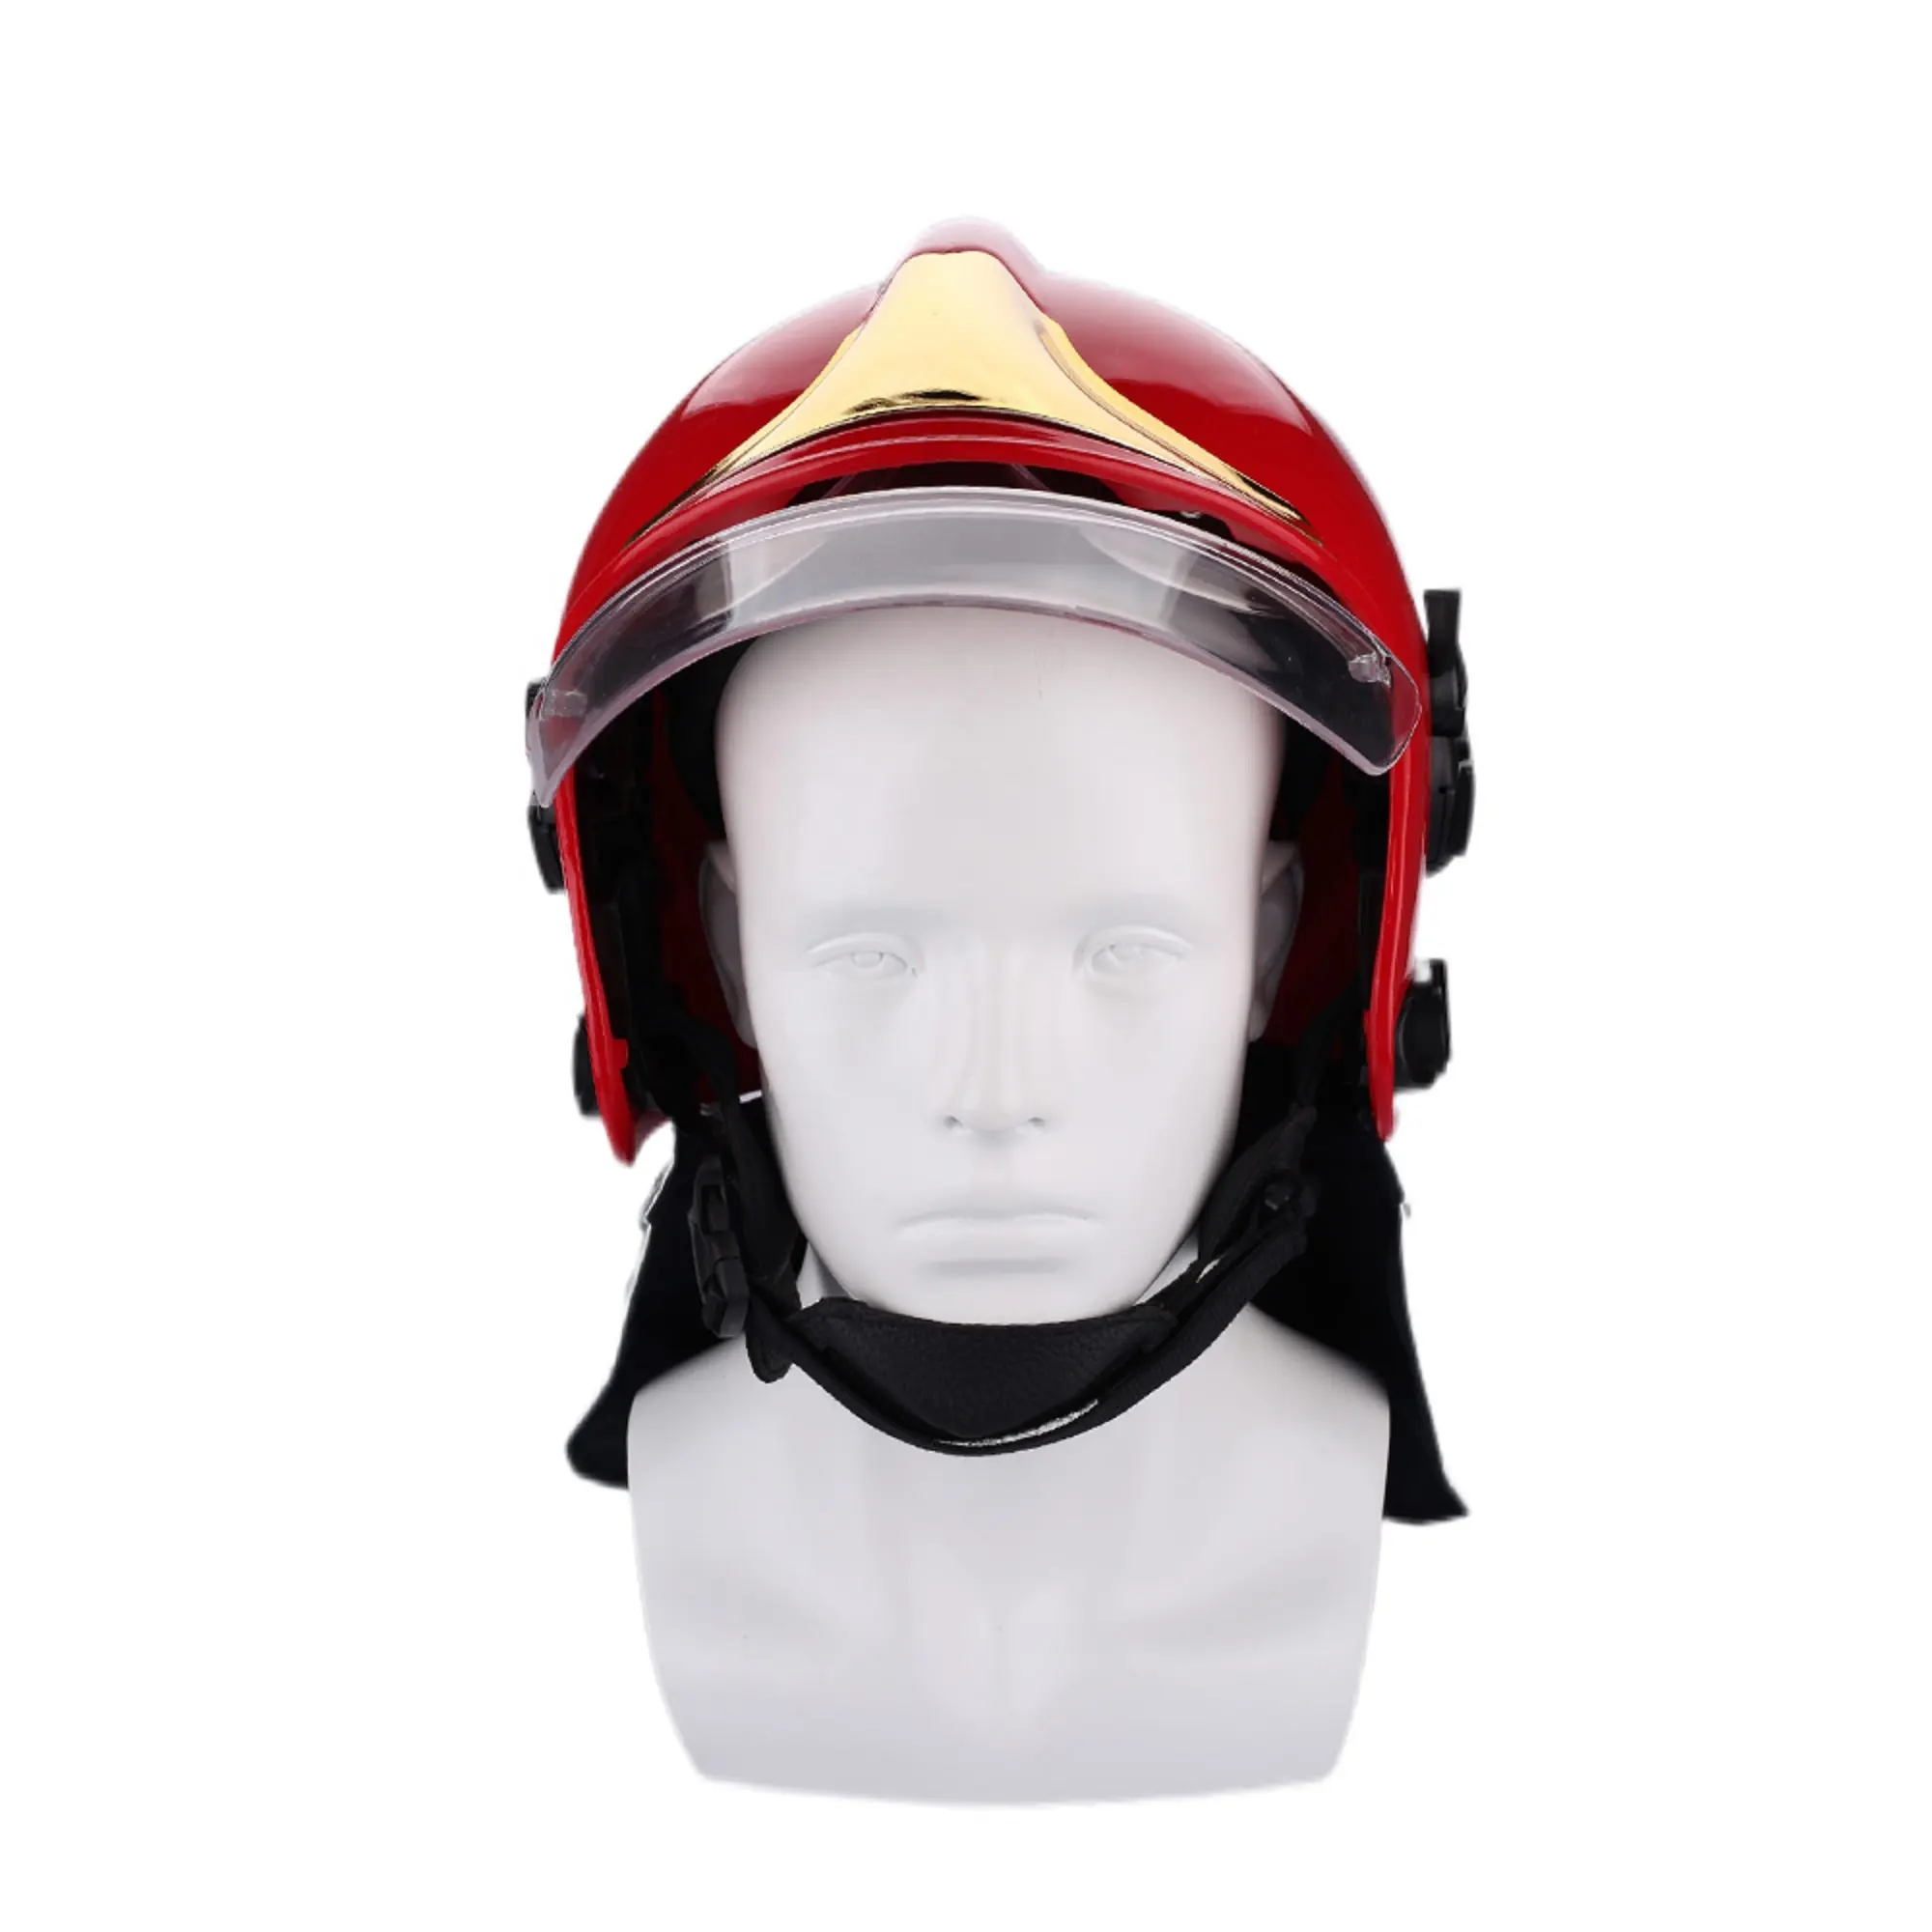 Estilo Europeu Combate a Incêndio Emergência Resgate Segurança capacetes bombeiro protetor